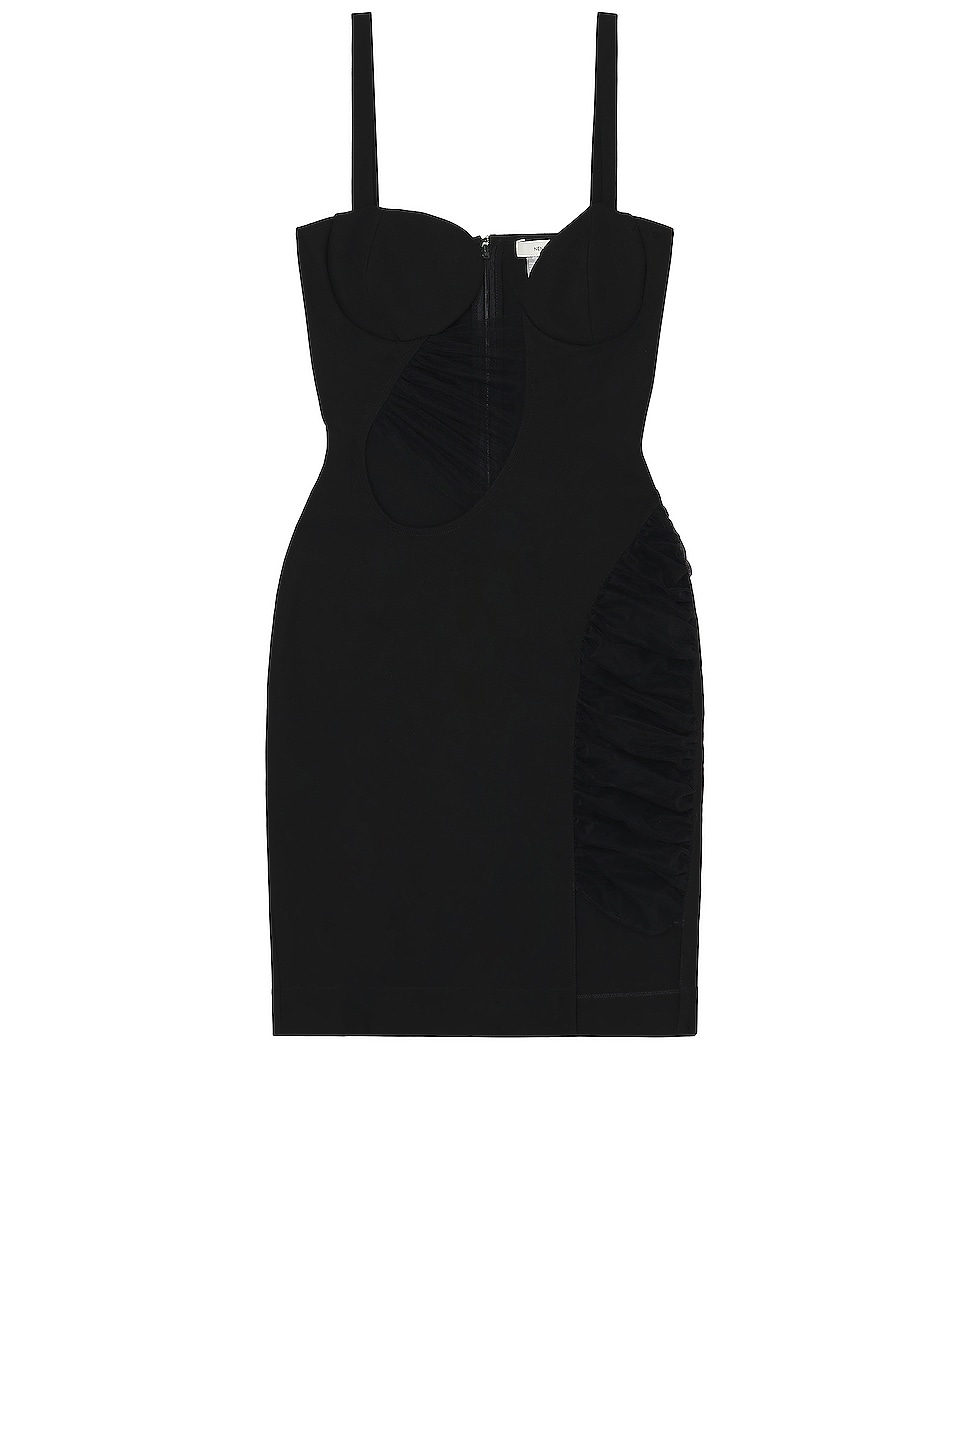 Image 1 of Nensi Dojaka Asymmetrical Mini Dress in Black